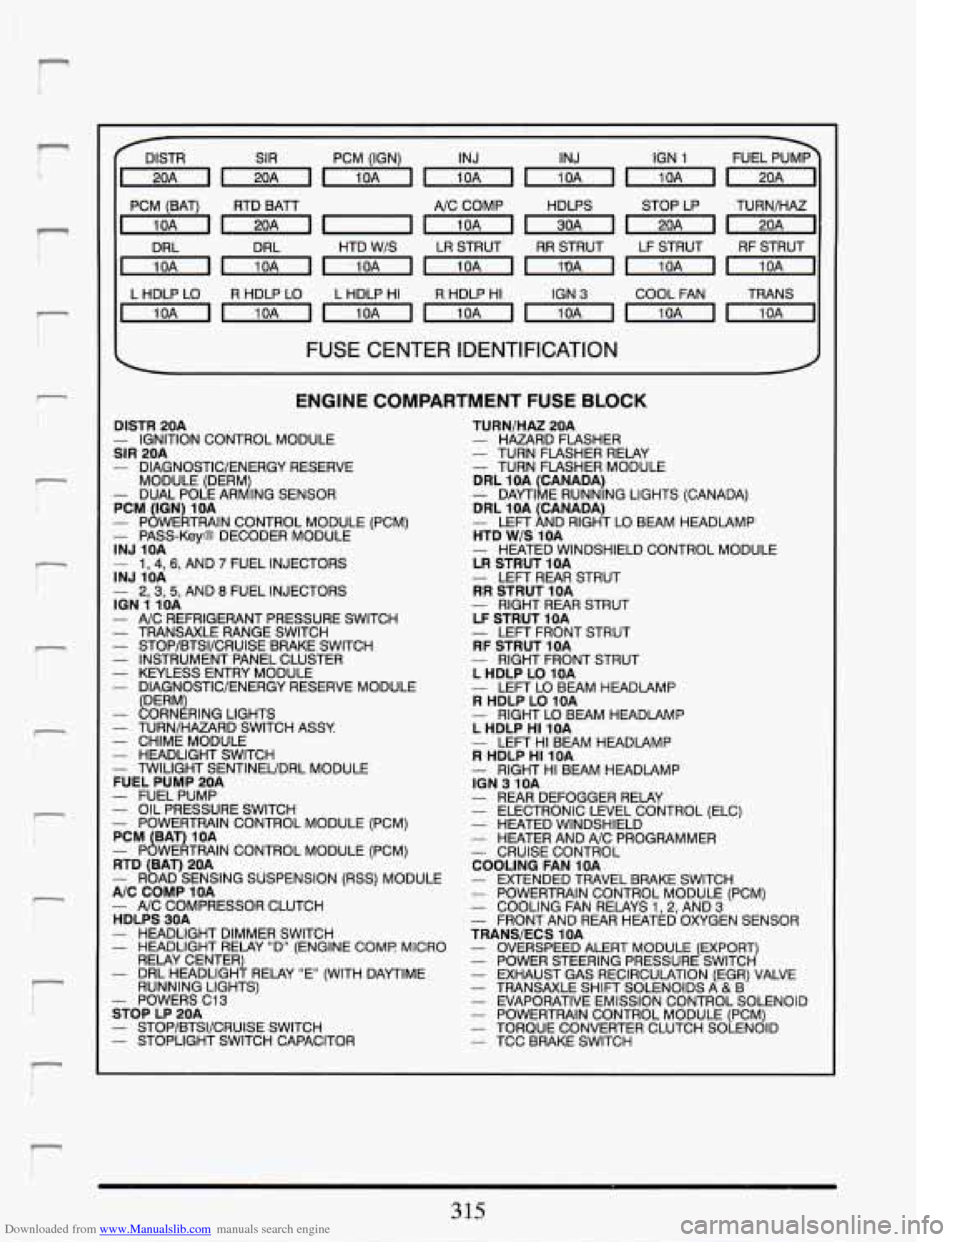 CADILLAC DEVILLE 1994 7.G Owners Manual Downloaded from www.Manualslib.com manuals search engine r I 
r i 
r‘ I 
!- I 
r 
? ! i 
!- i 
I 
r‘ L 
DlSTR SIR PCM  (IGN) INJ  INJ  IGN 1 
]mmmmmmri 
~mnmmmml 
PCM  (BAT) RTD BATT A/C  COMP  HD